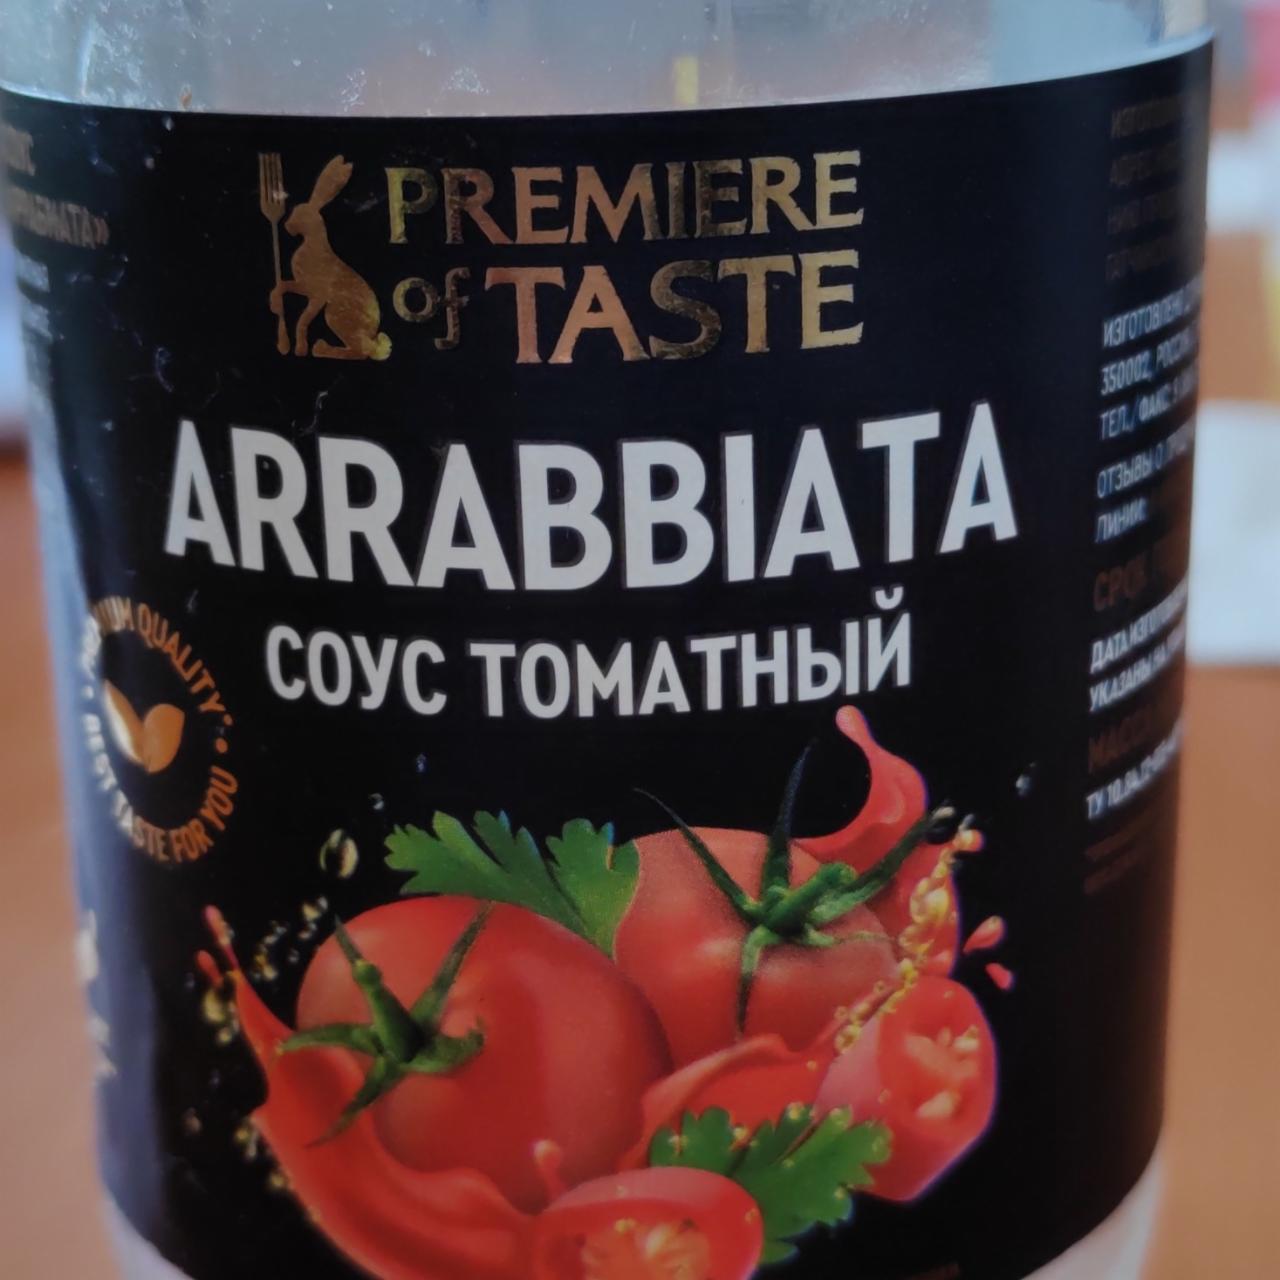 Фото - Arrabbiata соус томатный Premiere of taste